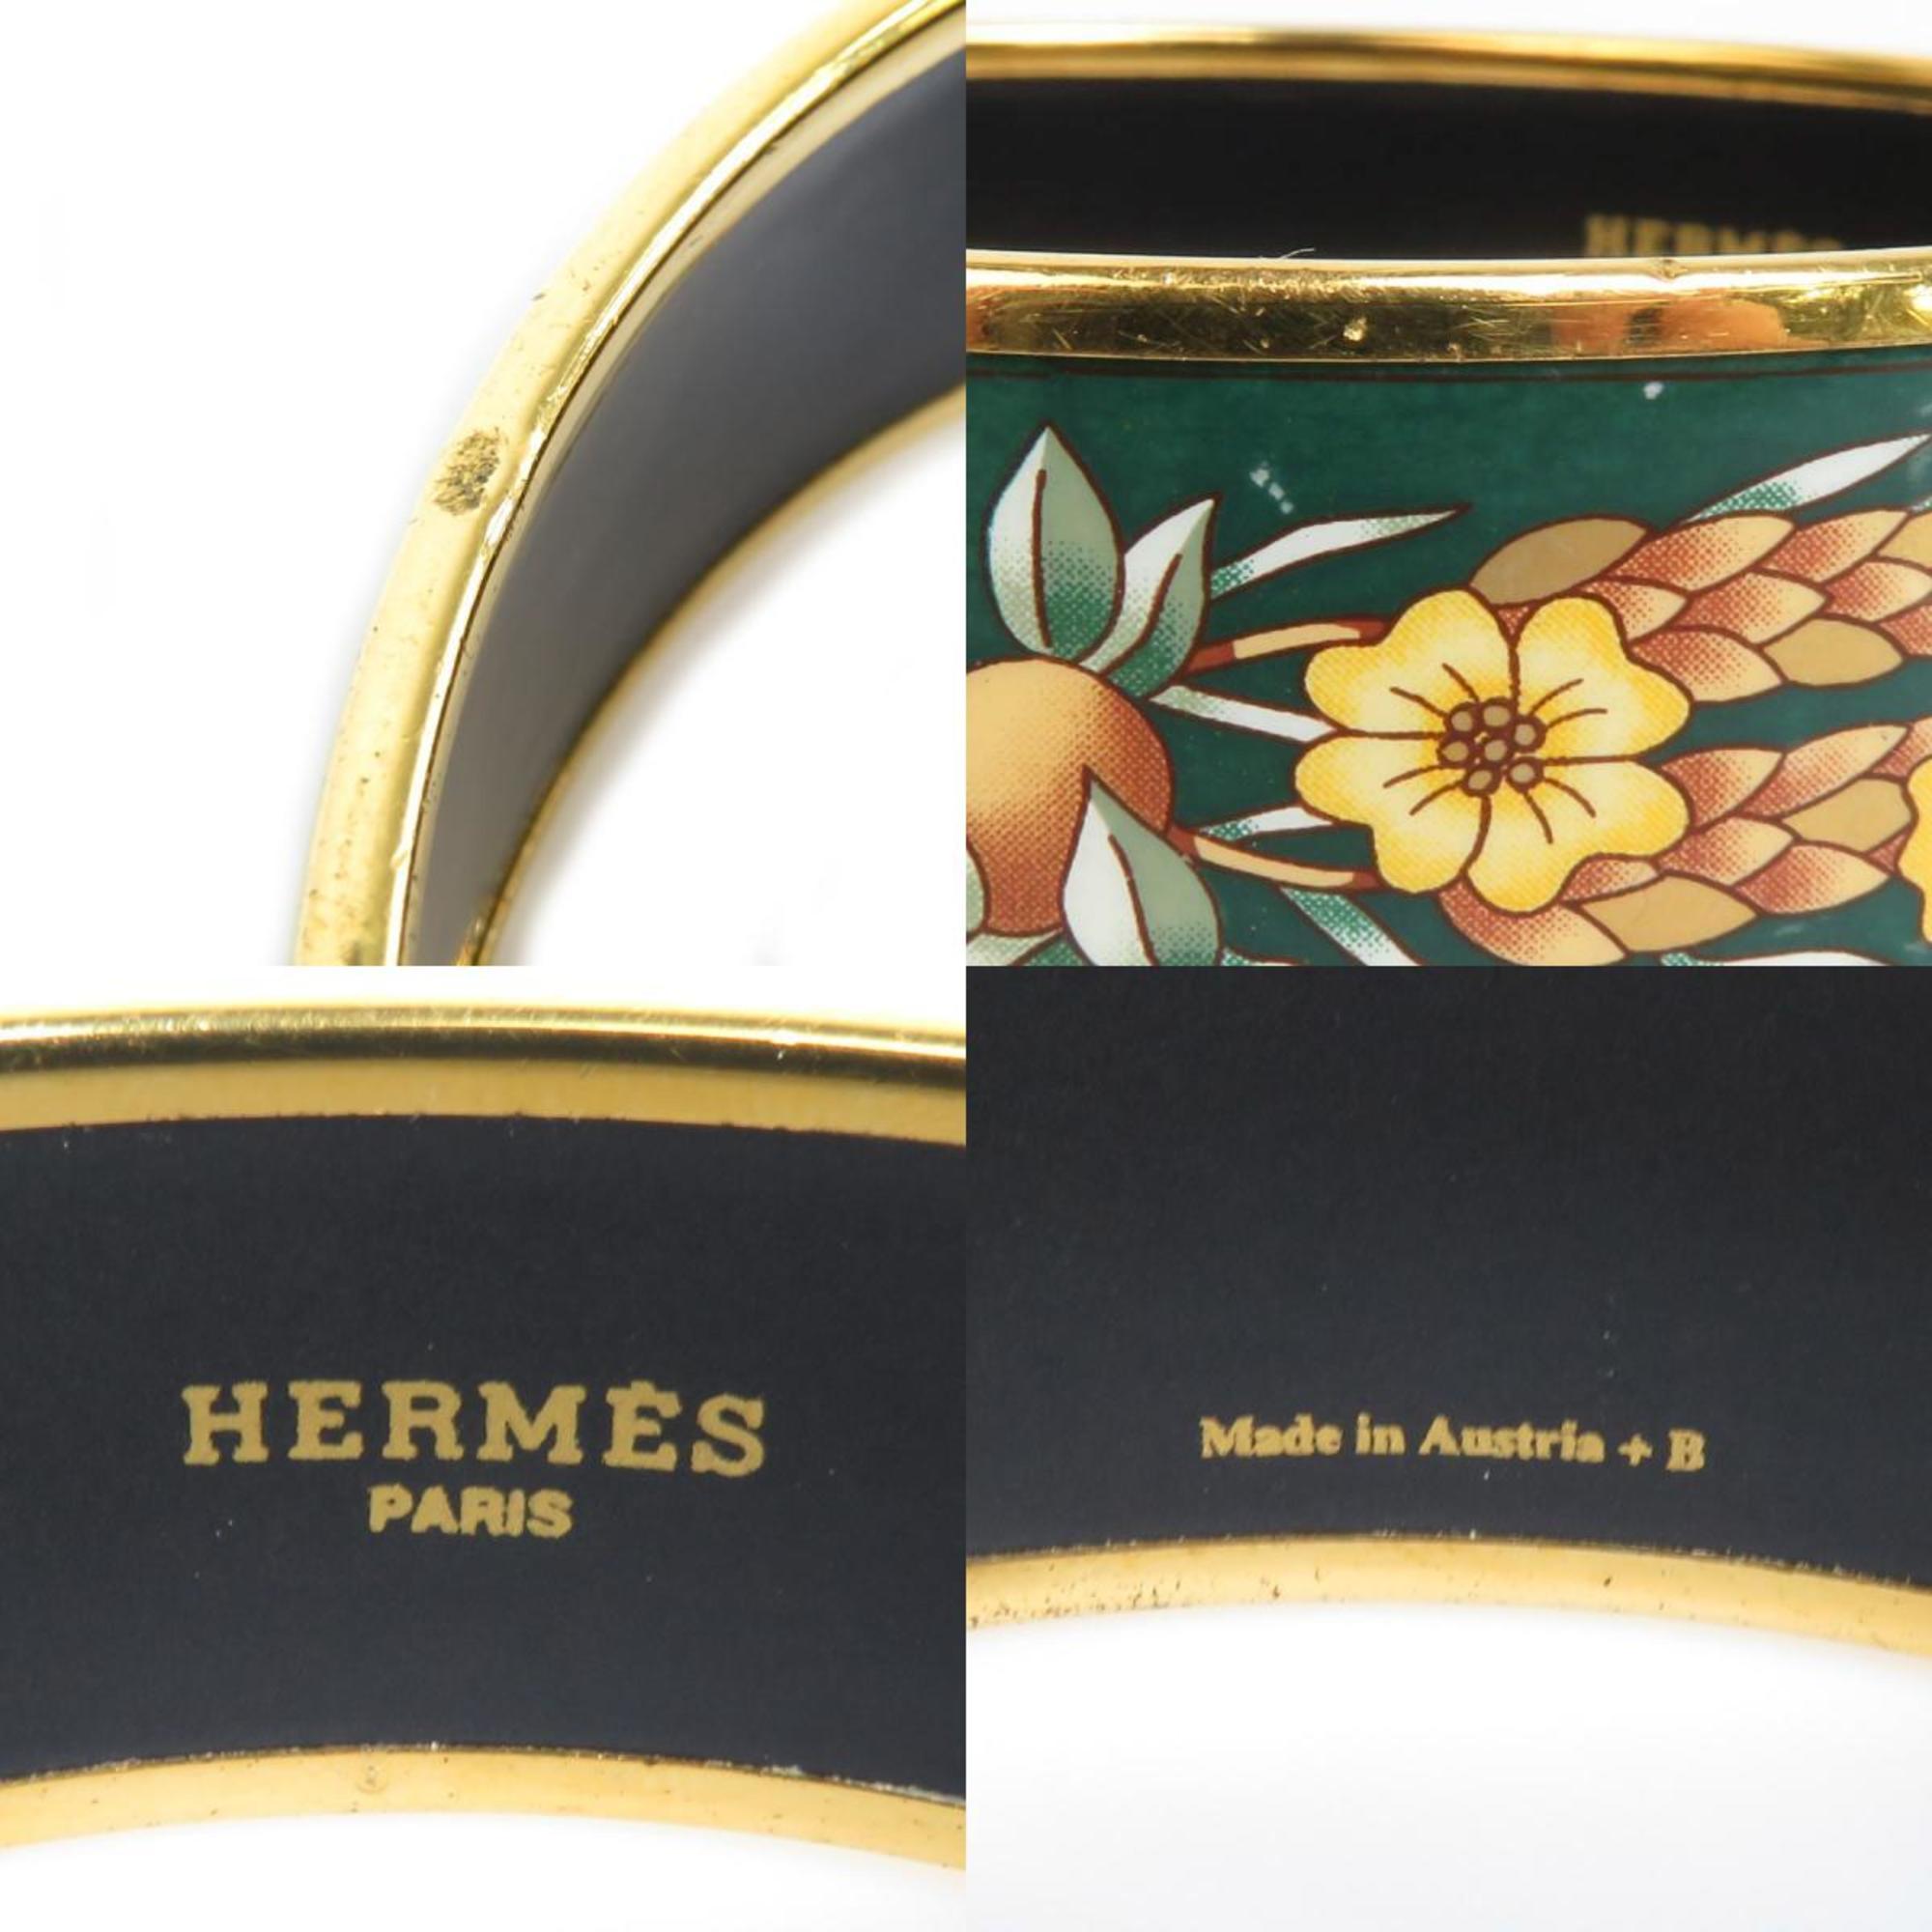 Hermes HERMES Bangle Bracelet Emaille Metal/Enamel Gold/Green Women's e58457a